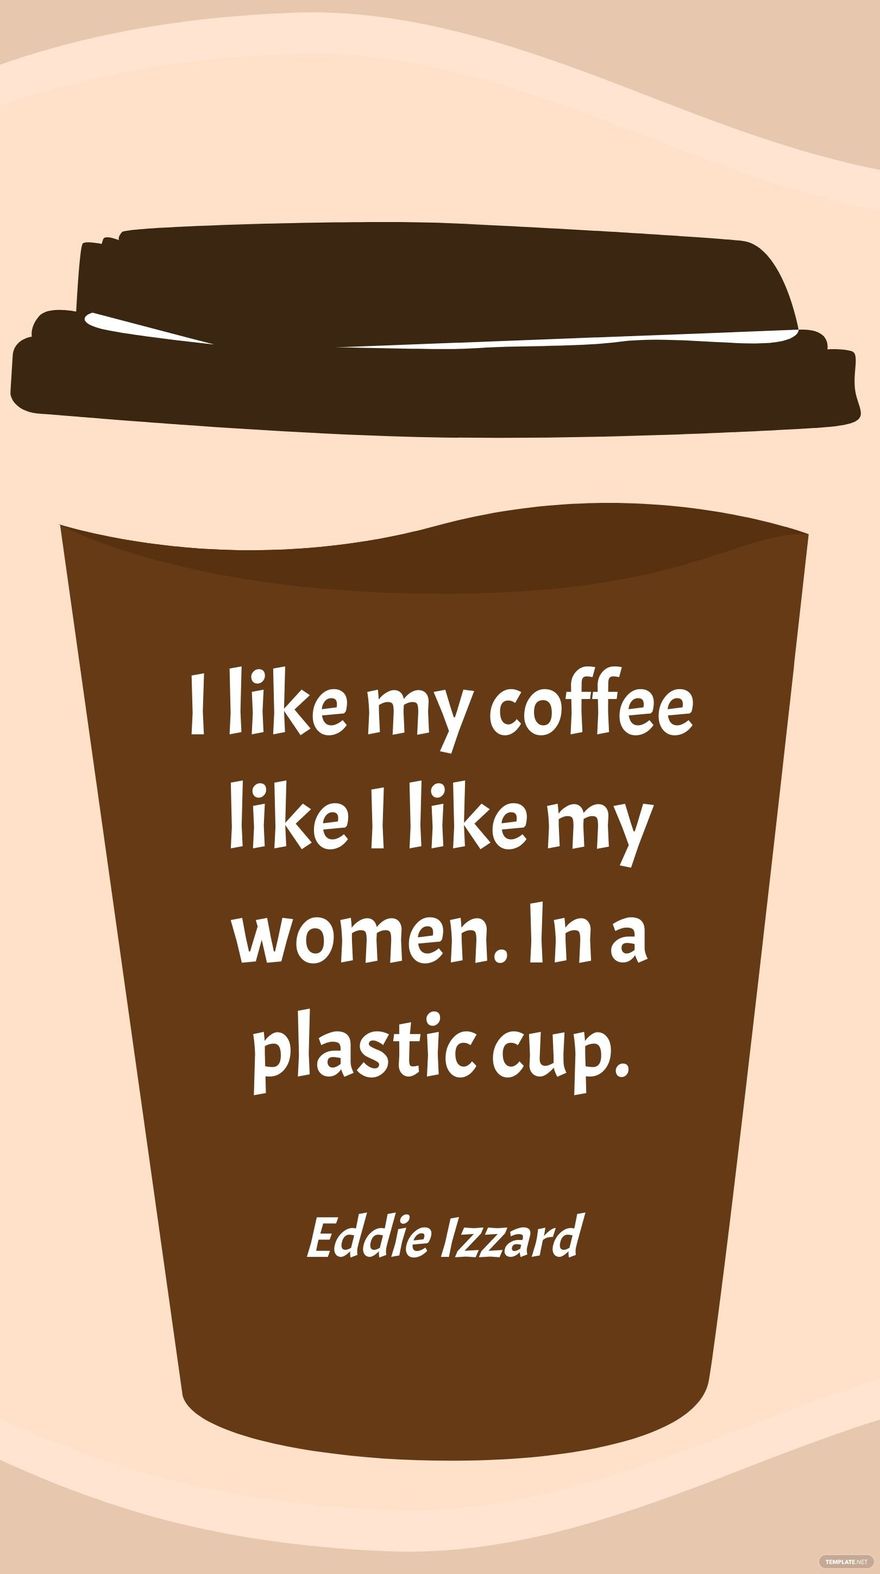 Eddie Izzard - I like my coffee like I like my women. In a plastic cup. in JPG